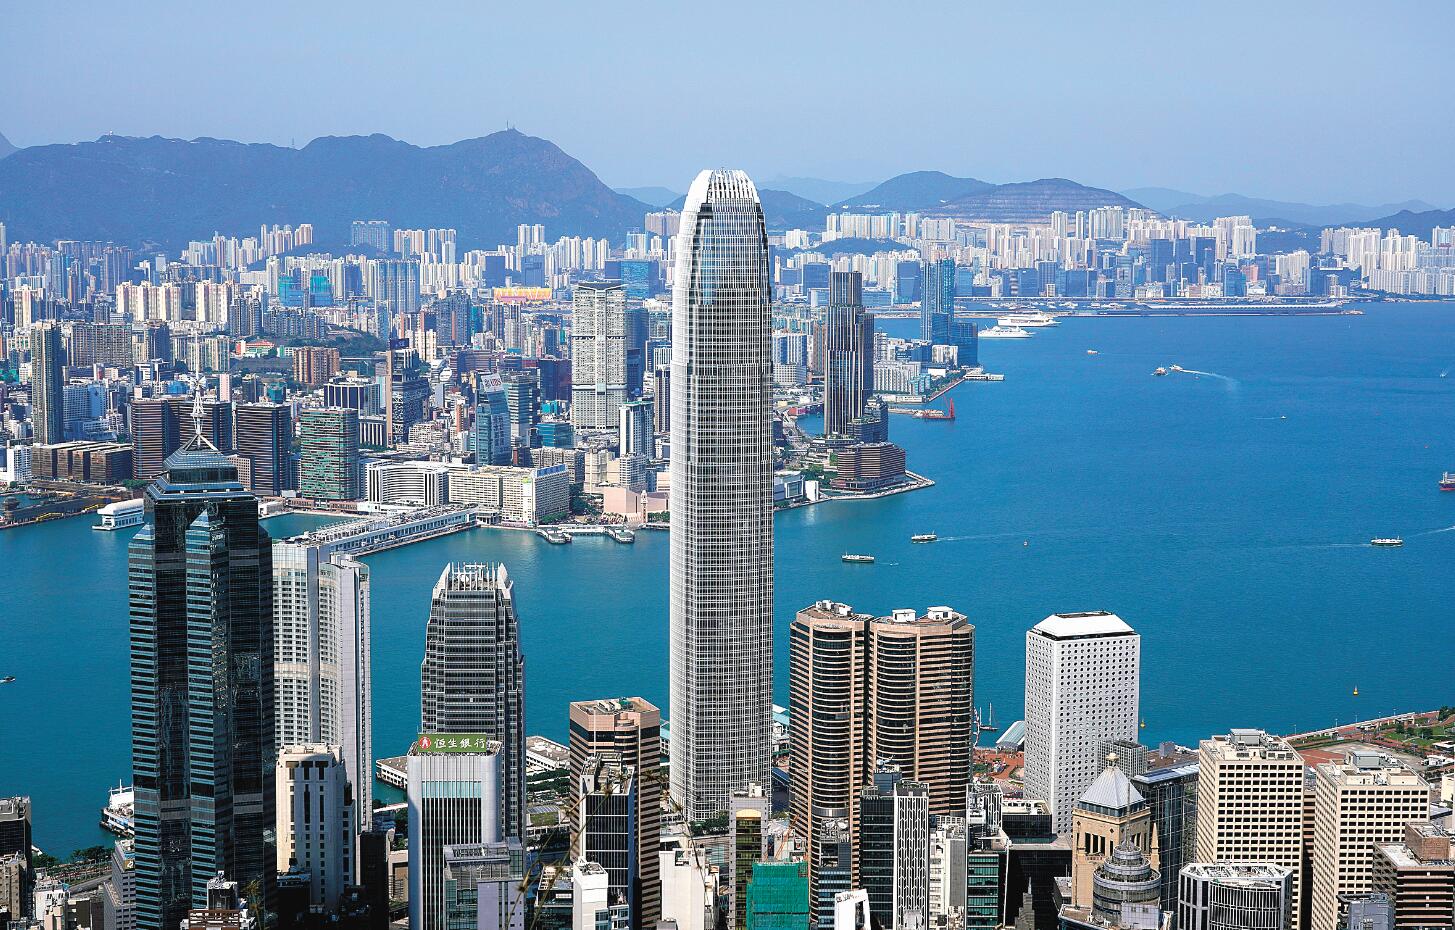 林琳支持政務司司長陳國基於聯合國人權理事會發言 香港在「一國兩制」指引下必將長期繁榮穩定